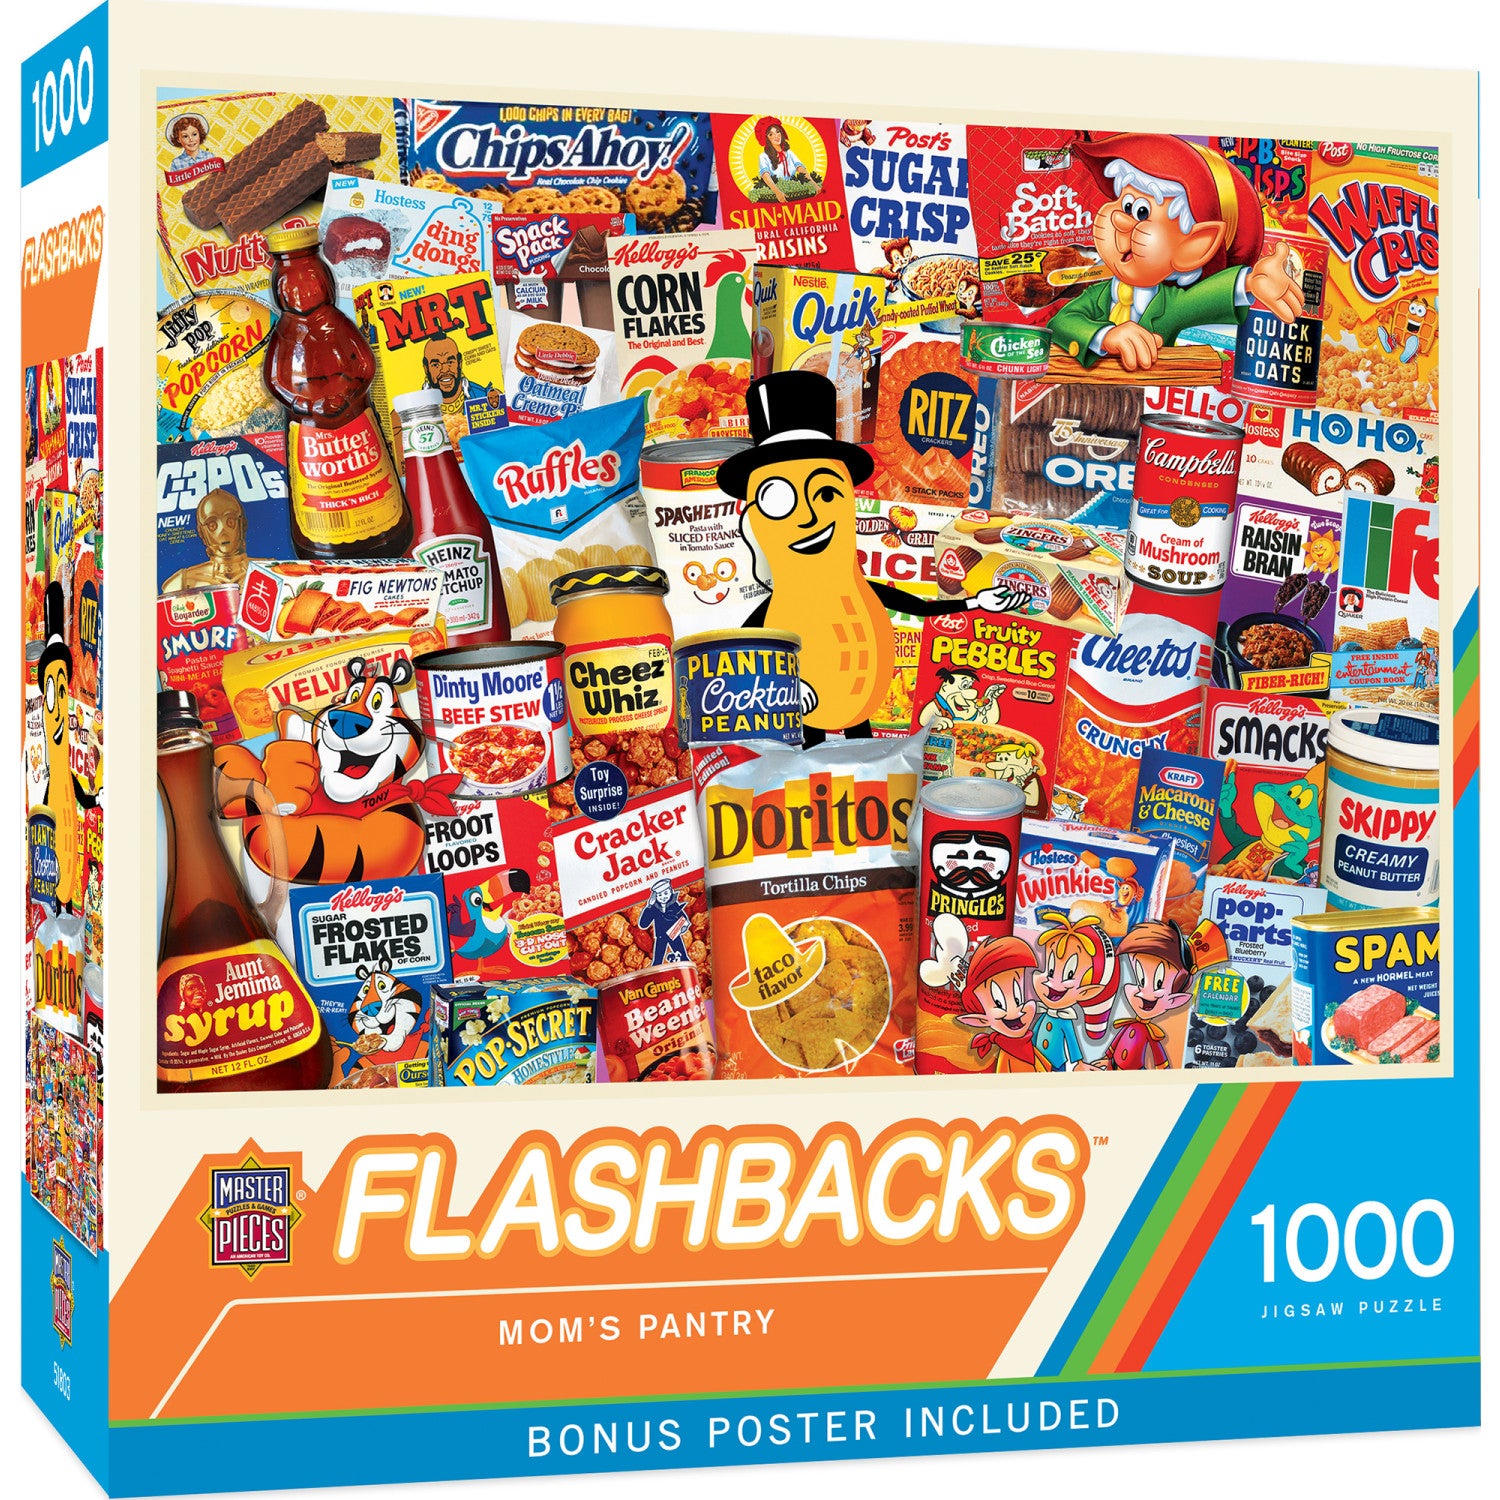 Flashbacks - Mom's Pantry 1000 Piece Jigsaw Puzzle